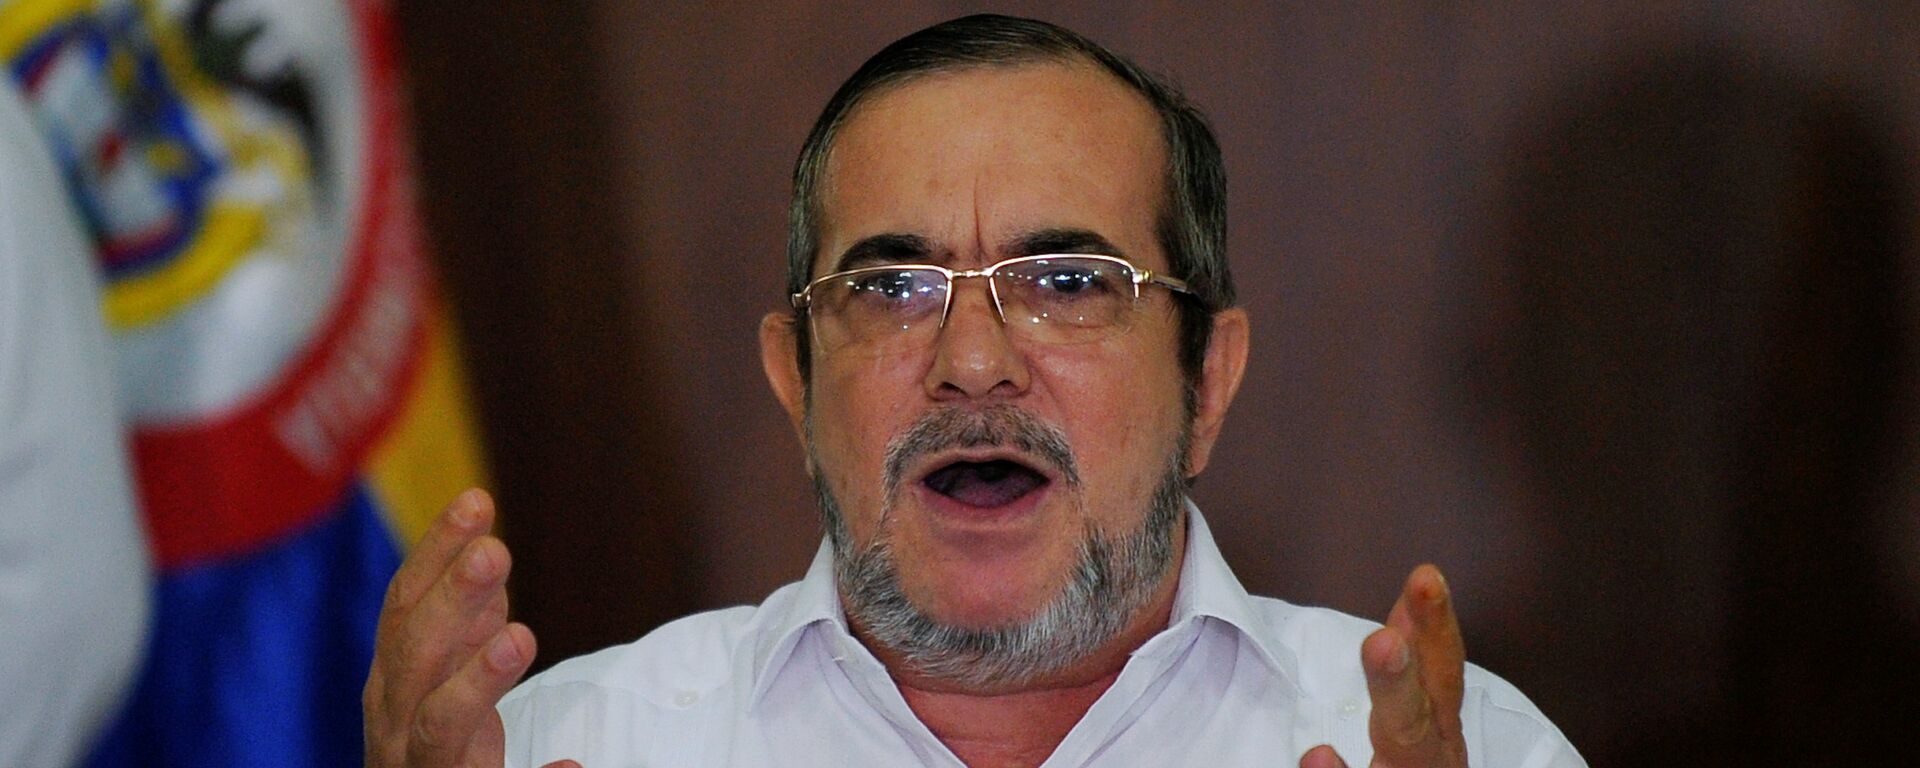 Rodrigo Londoño, alias 'Timochenko', el líder del partido colombiano FARC  - Sputnik Mundo, 1920, 22.01.2021